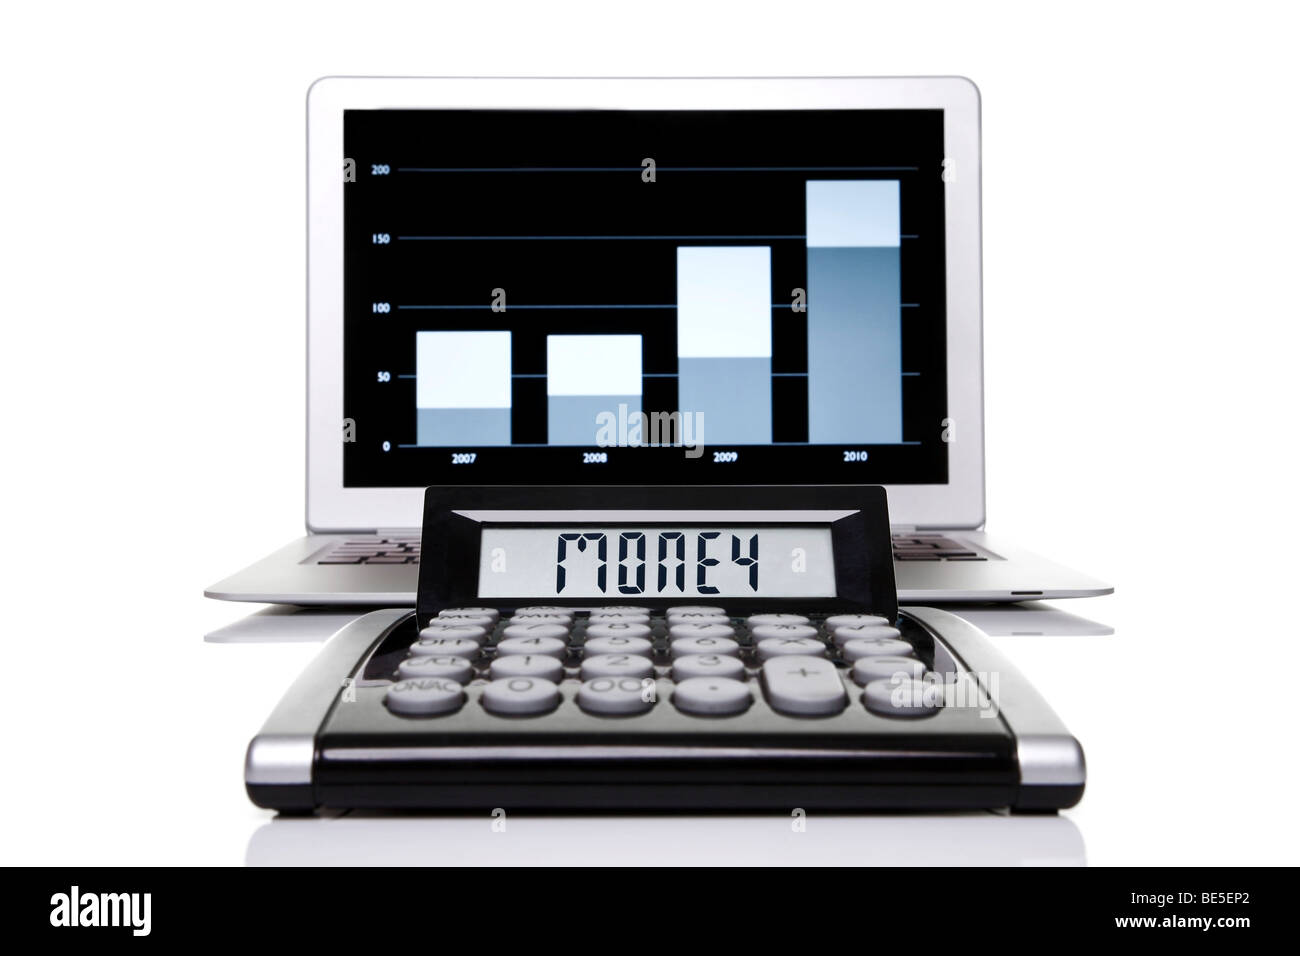 Rechner mit der Bezeichnung mit Geld vor einem Laptop mit einer Statistik-Grafik Stockfoto